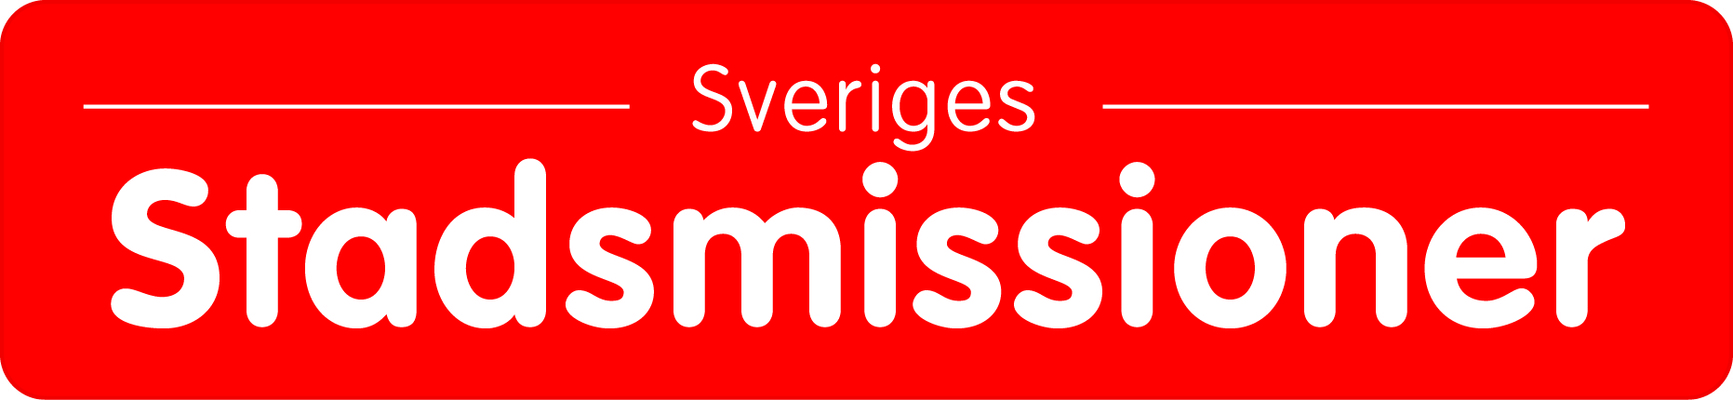 Profile image for Sveriges Stadsmissioner